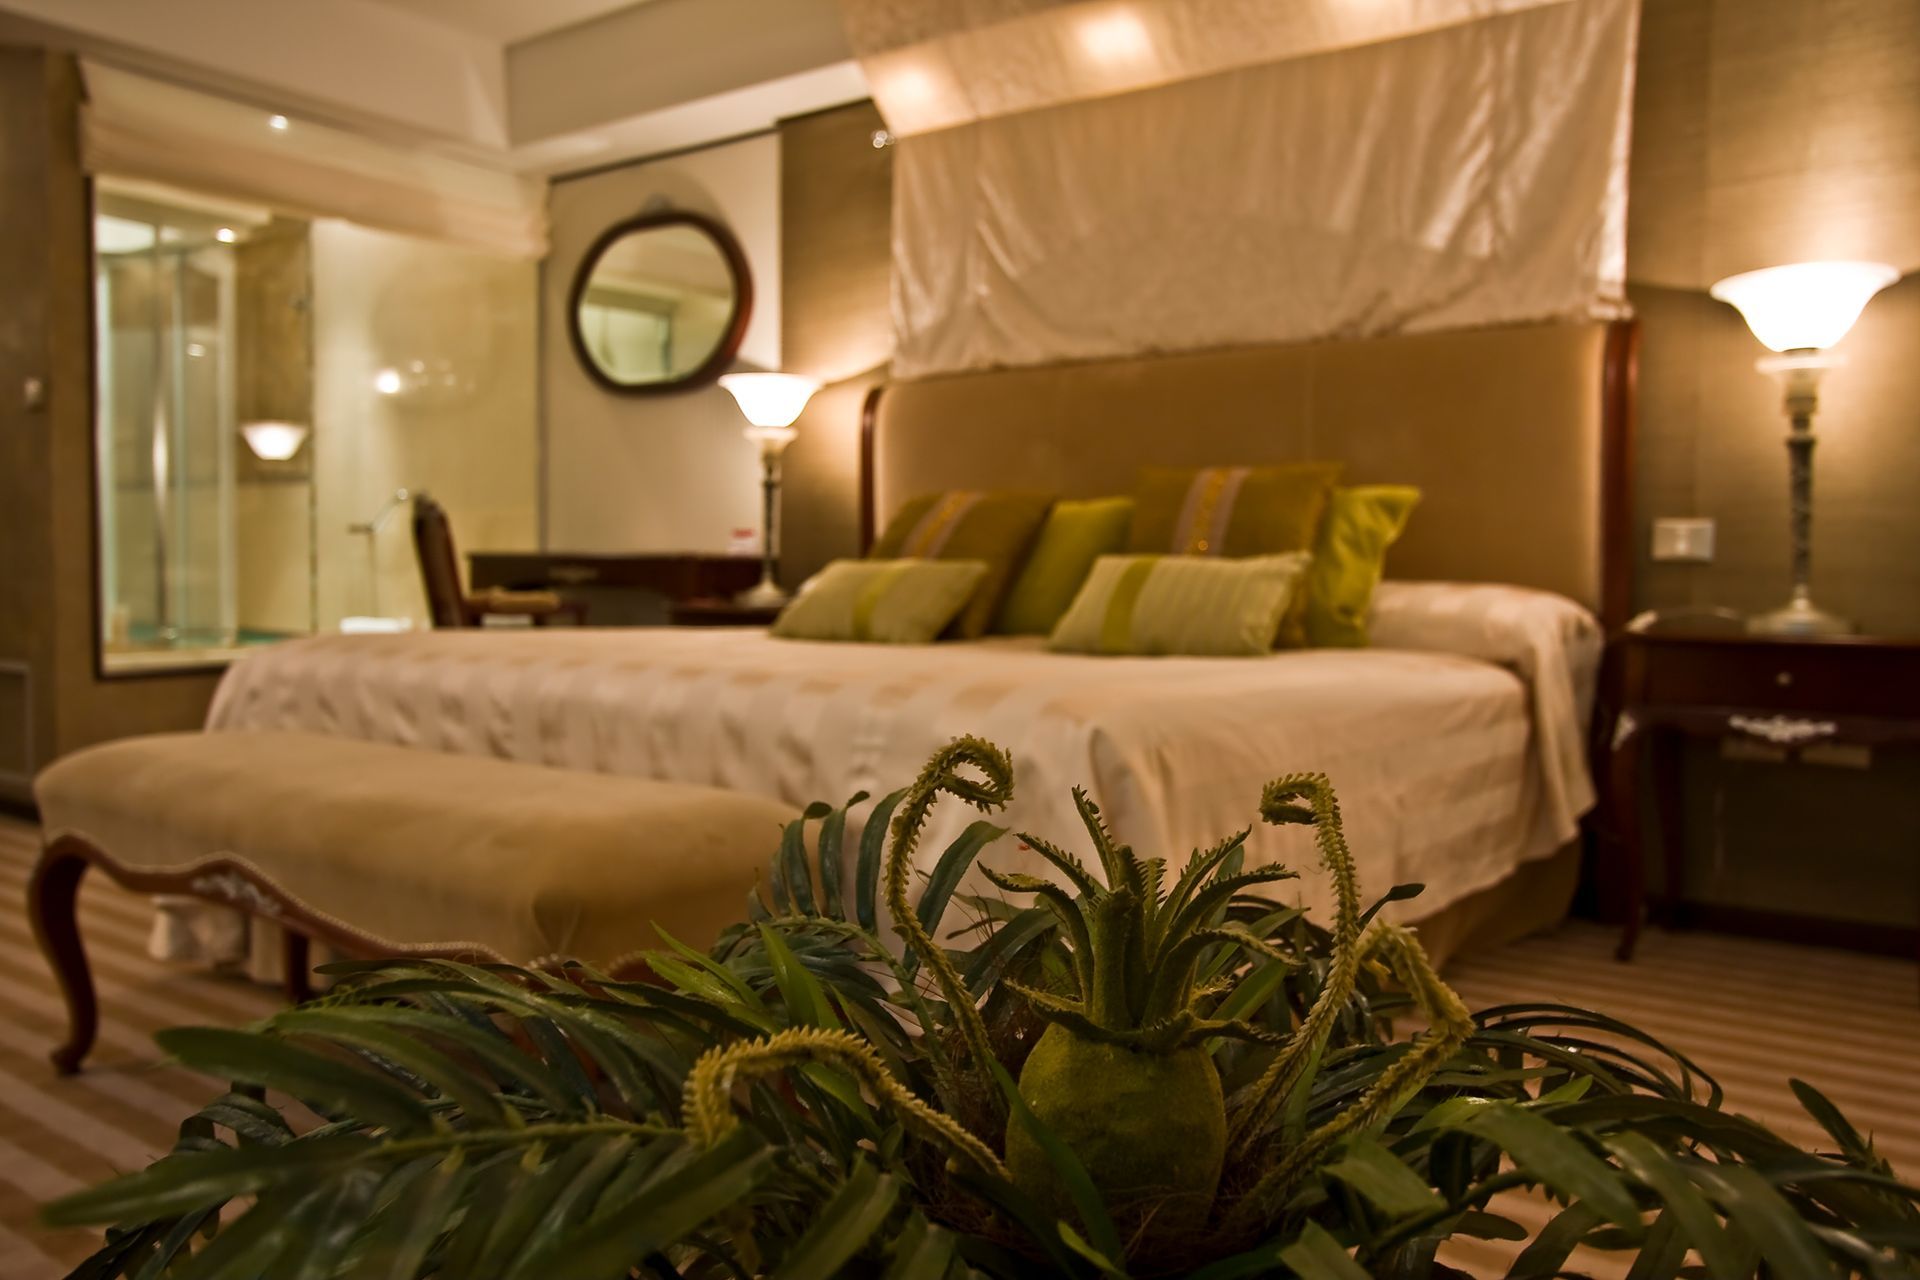 Un dormitorio con una cama grande y una planta en primer plano.